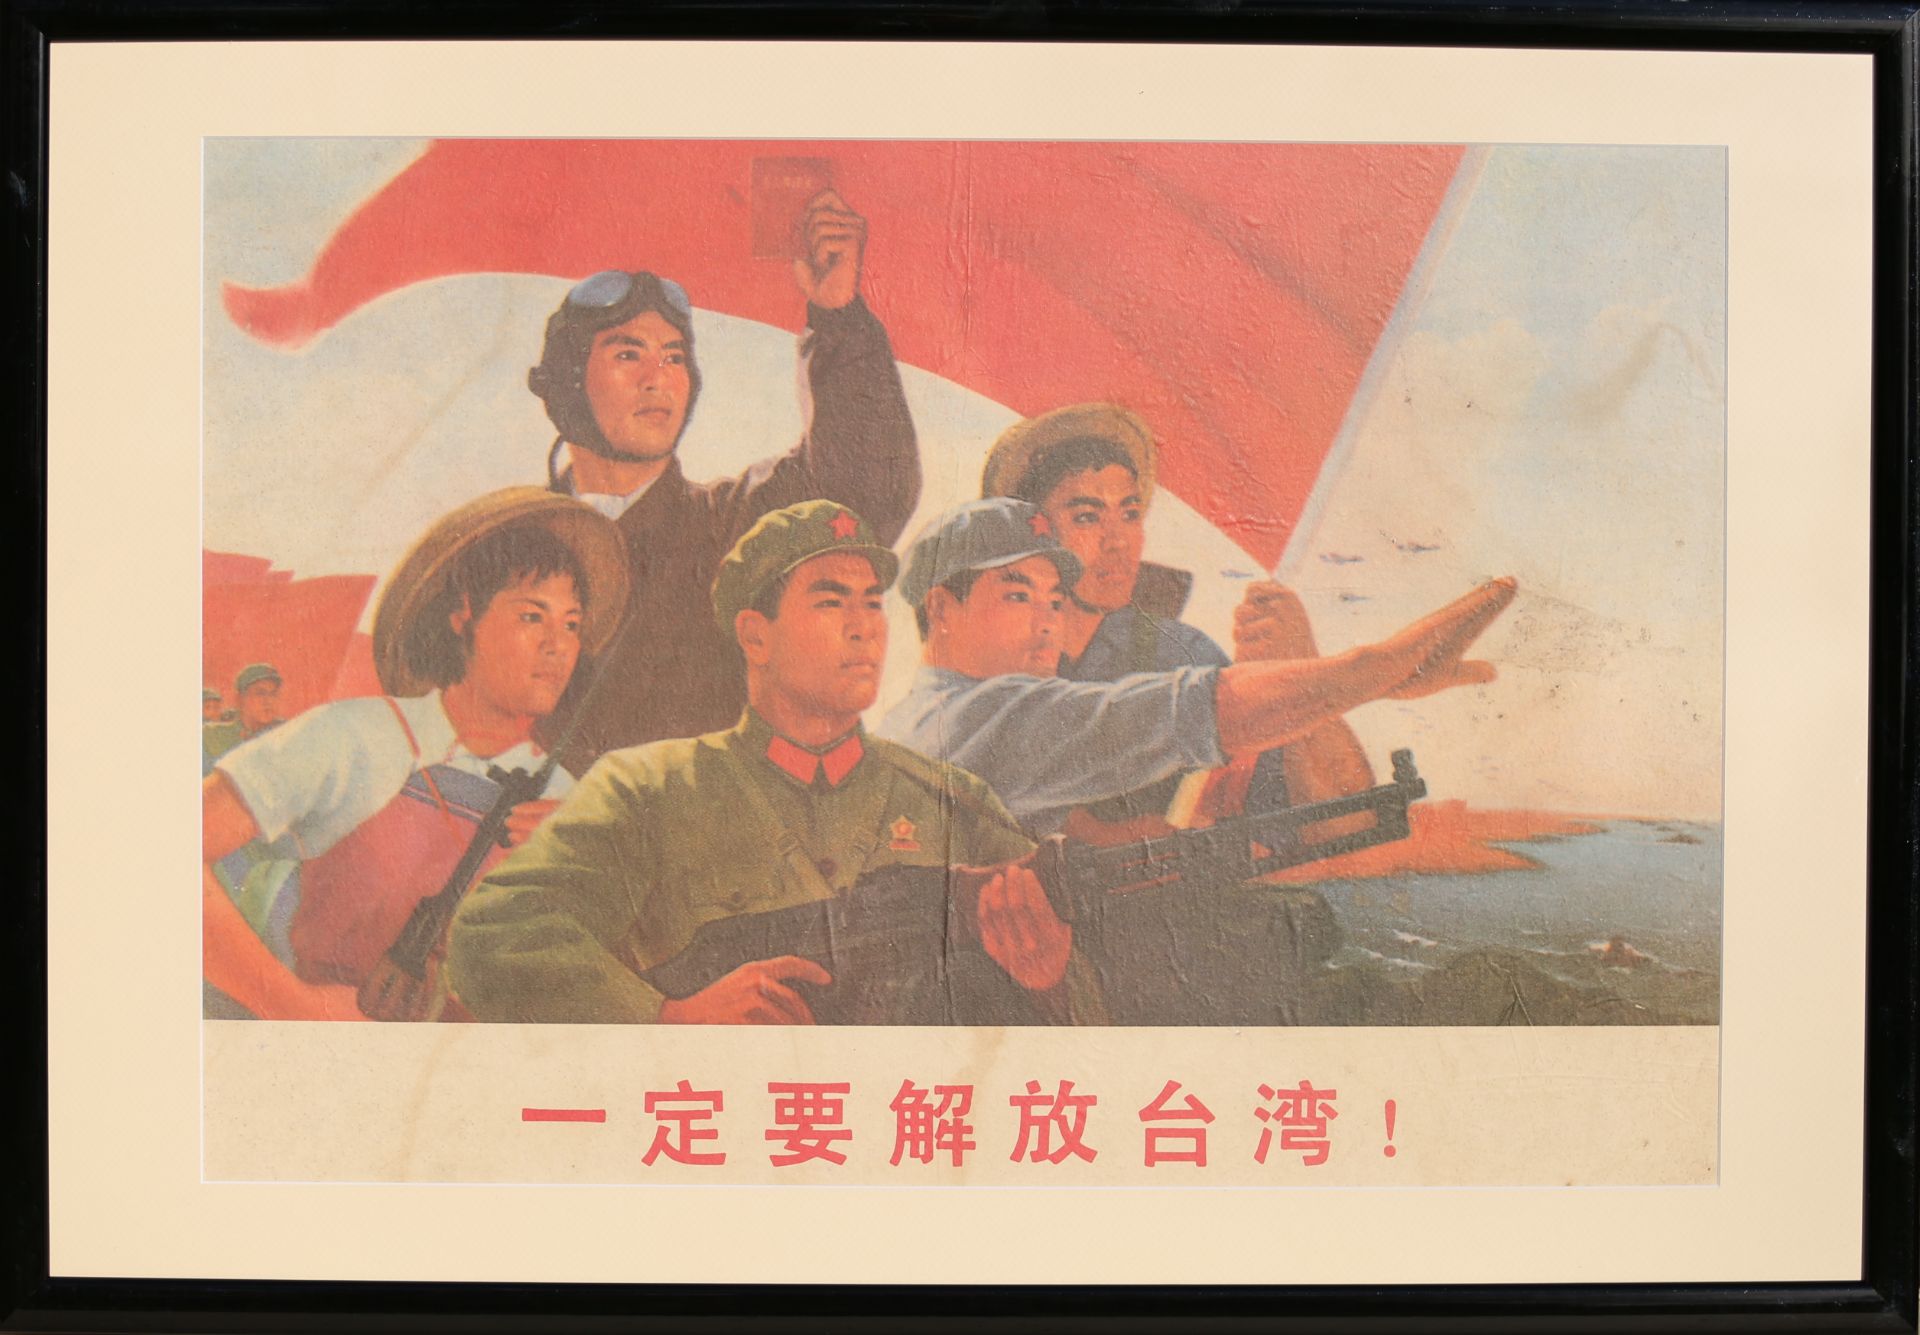 12 Affiches de propagande de la révolution culturelle chinoise Encadrée 75cm x 52cm - Image 7 of 12